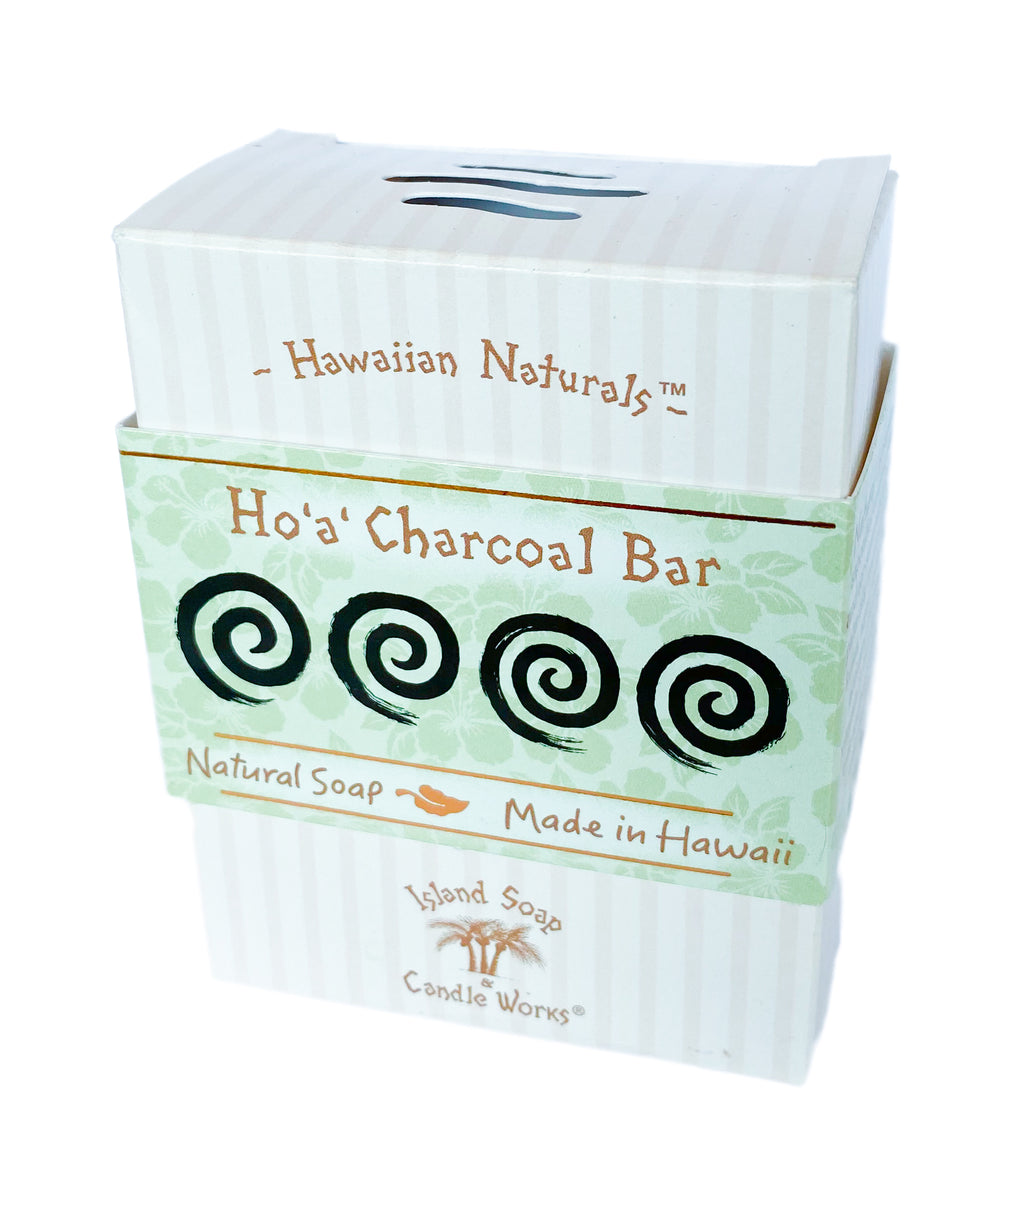 Ho'a' Charcoal Bar - 4.4 oz. Hawaiian Naturals Soap